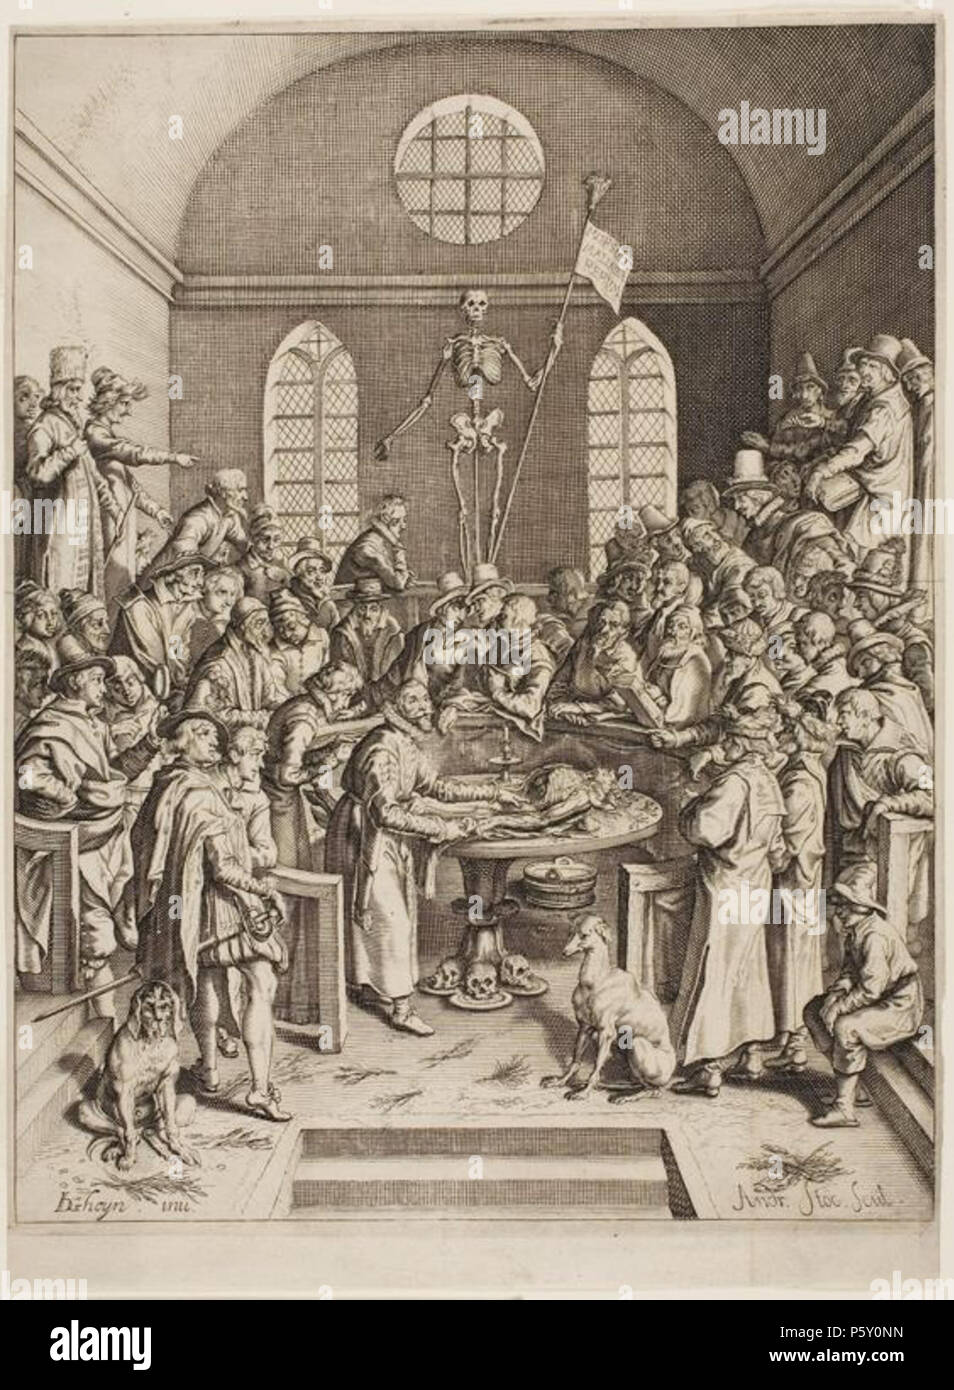 N/A. Inglese: una rappresentazione di un teatro anatomico . 1616. Andries Stock (durata di vita: 1580-1648) 43 una rappresentazione di un teatro anatomico Foto Stock